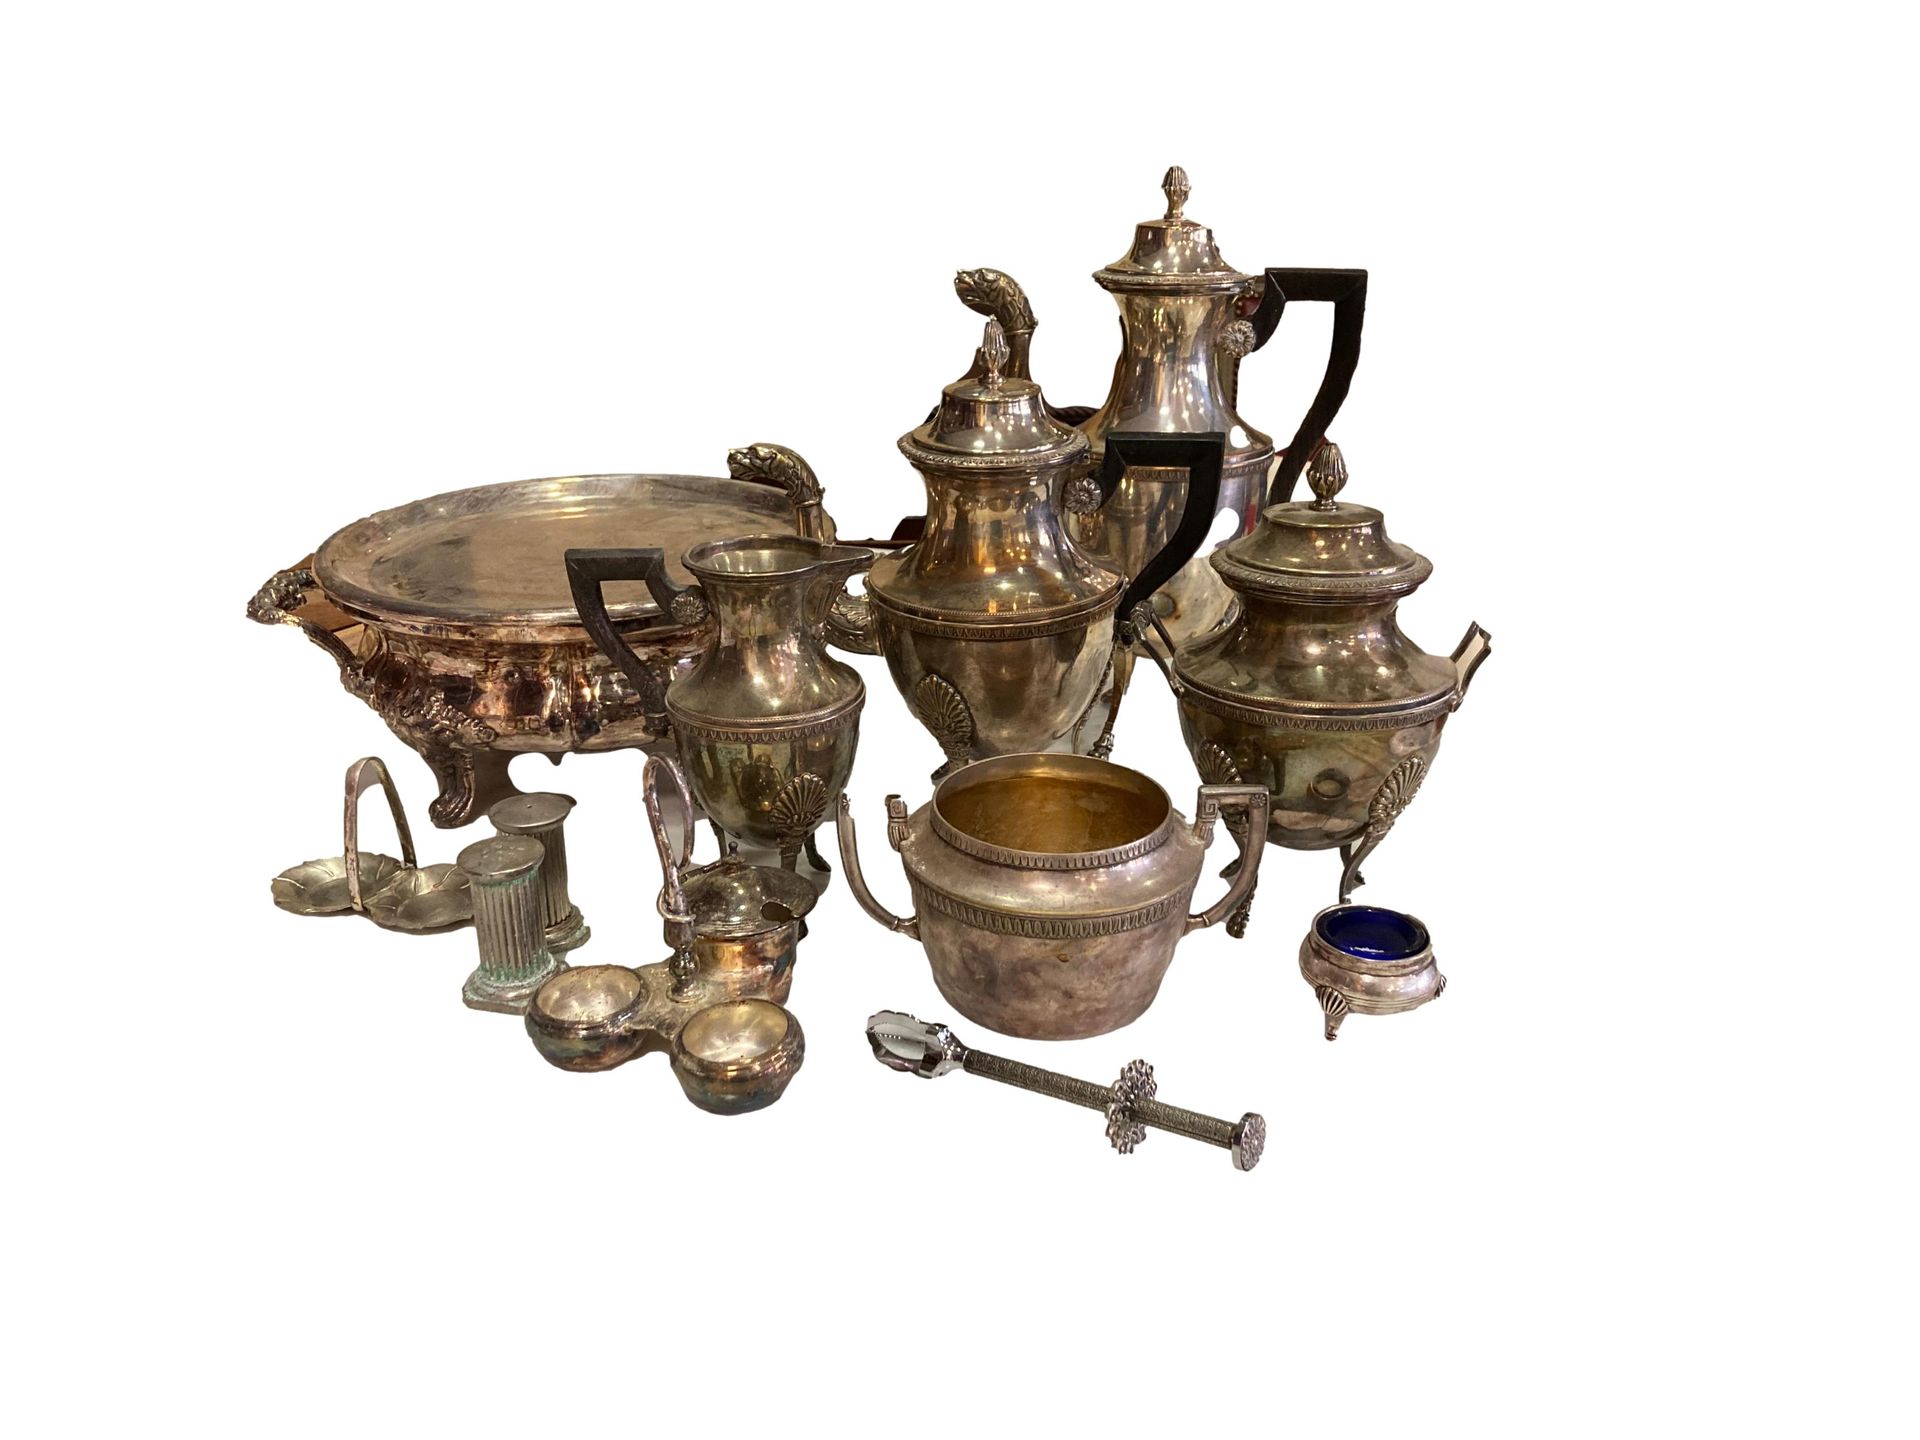 Null 镀银套装包括一套咖啡套装，包括茶壶，咖啡壶和帝国风格的糖碗，一个暖碟器，一个糖钳，一个盐窖。

使用条件